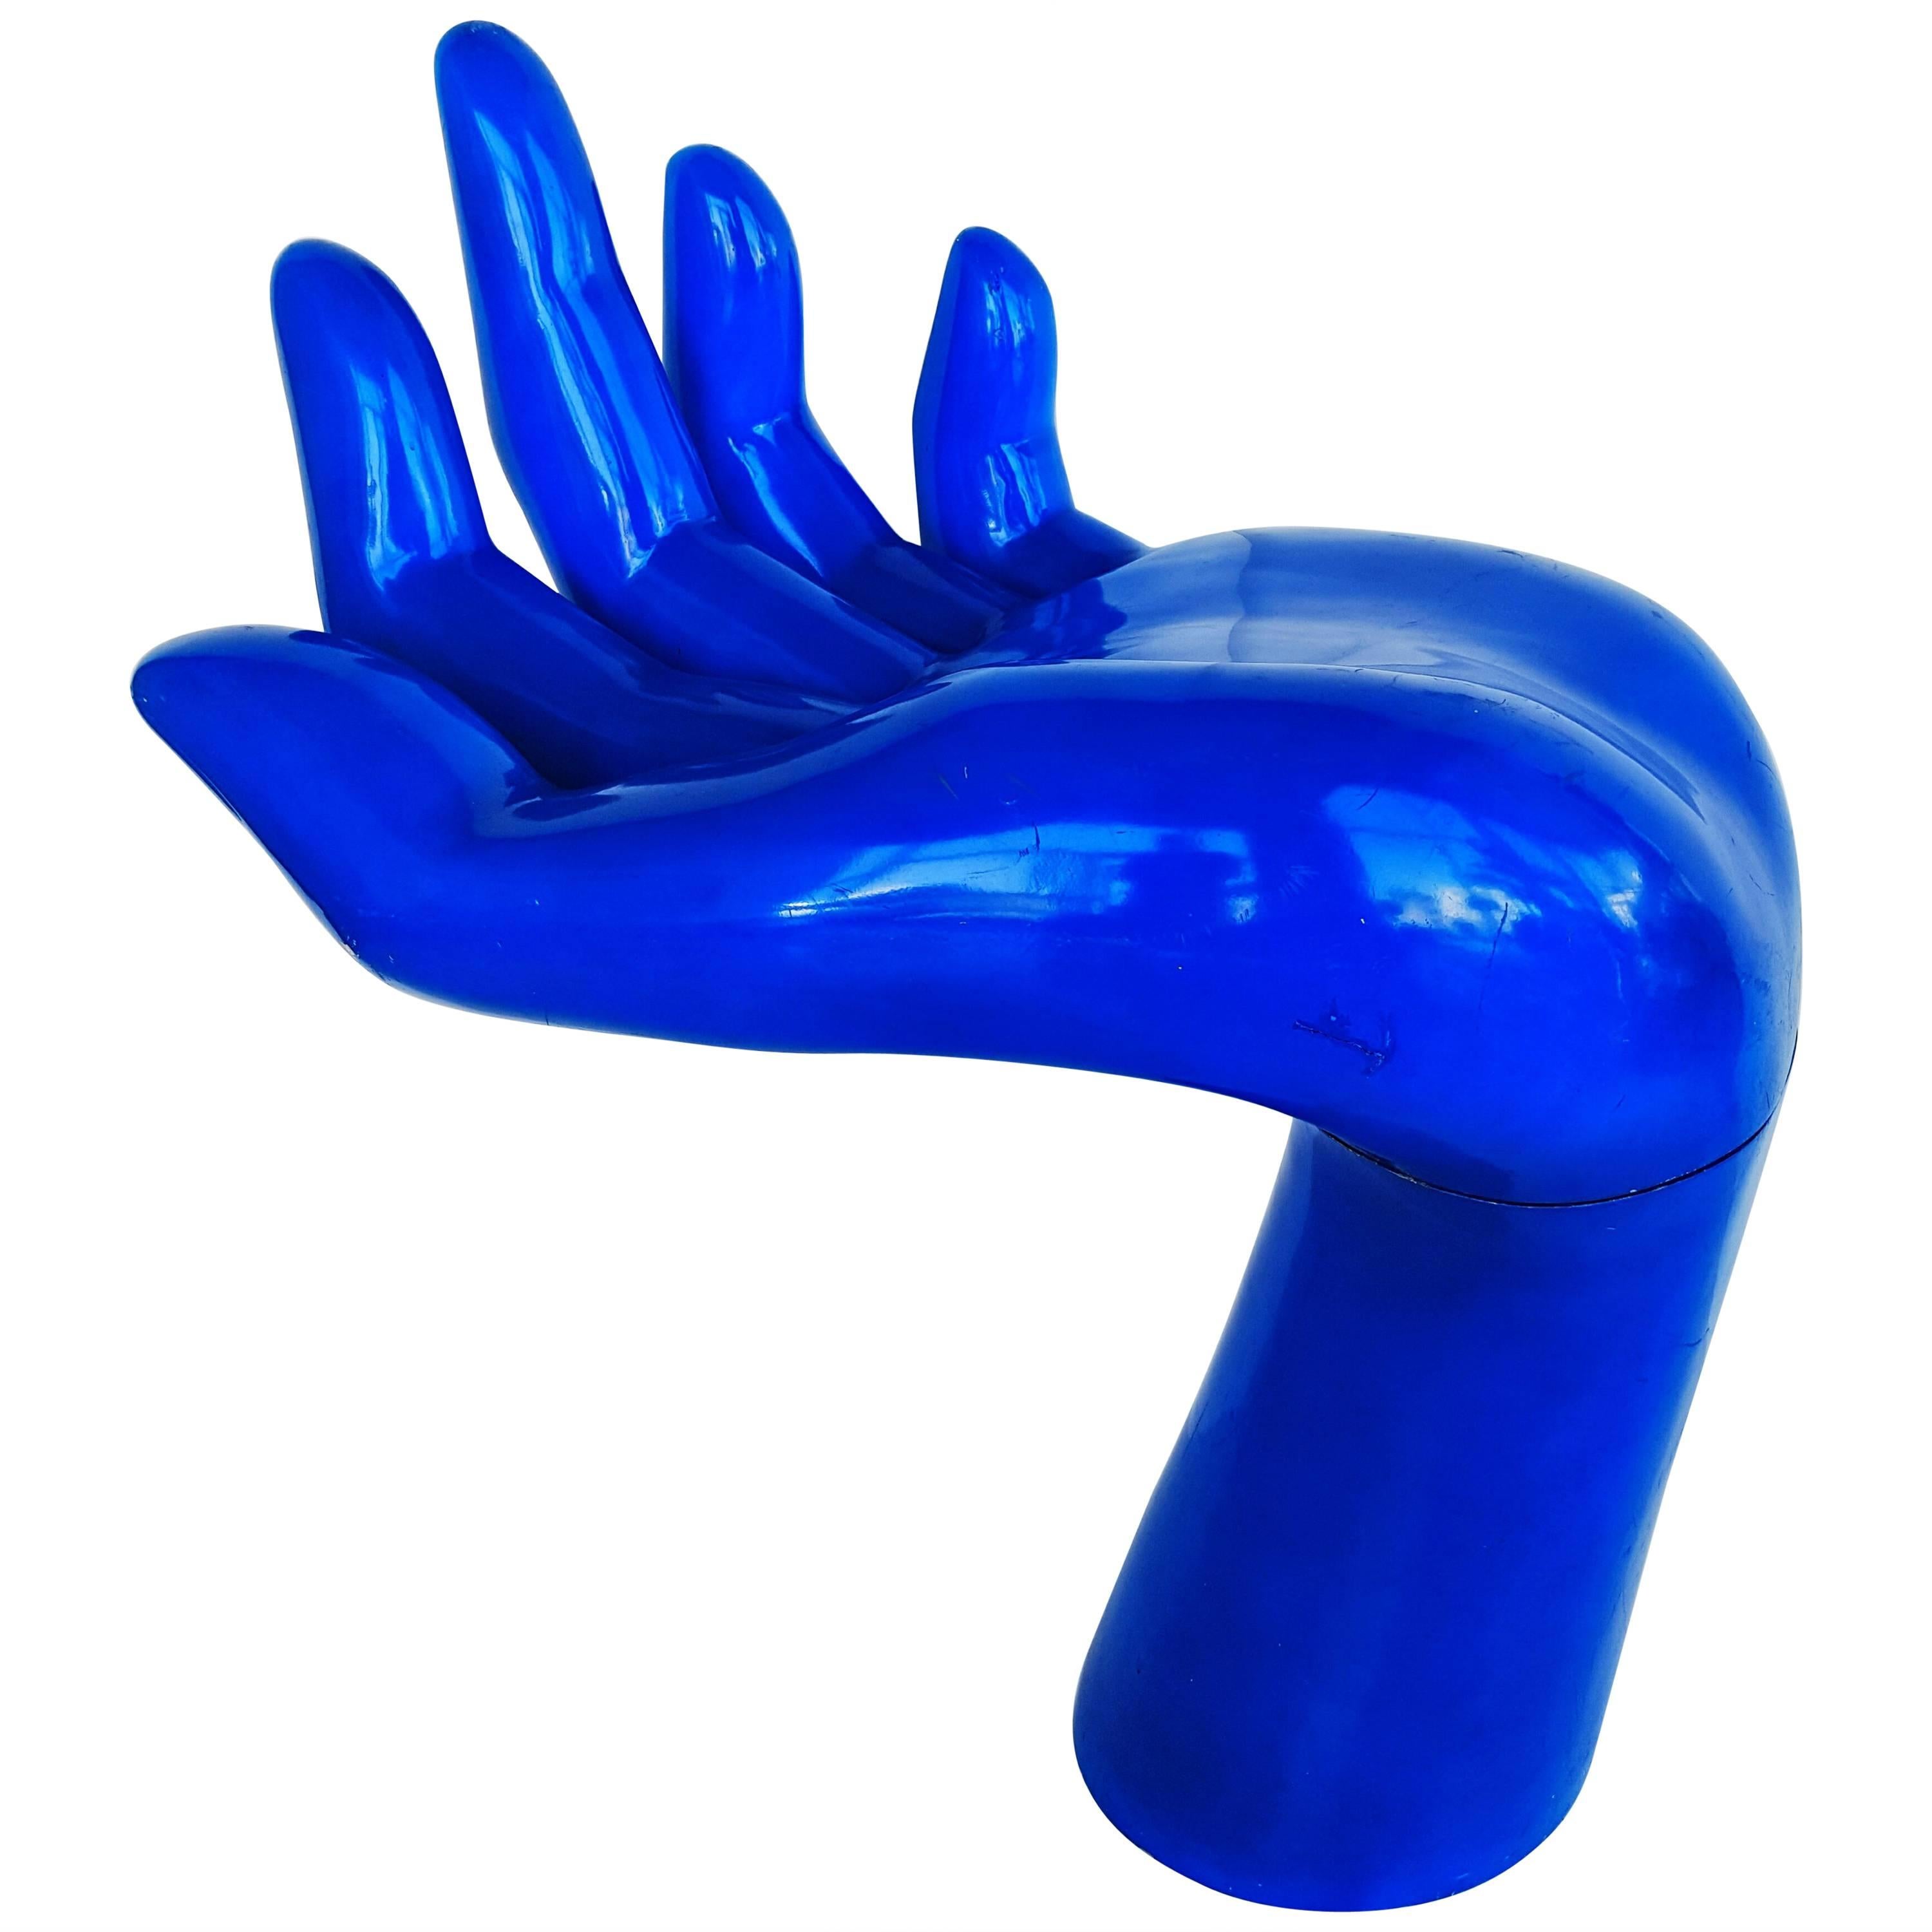 Rare and Monumental Blue Indigo Hand, 1970s